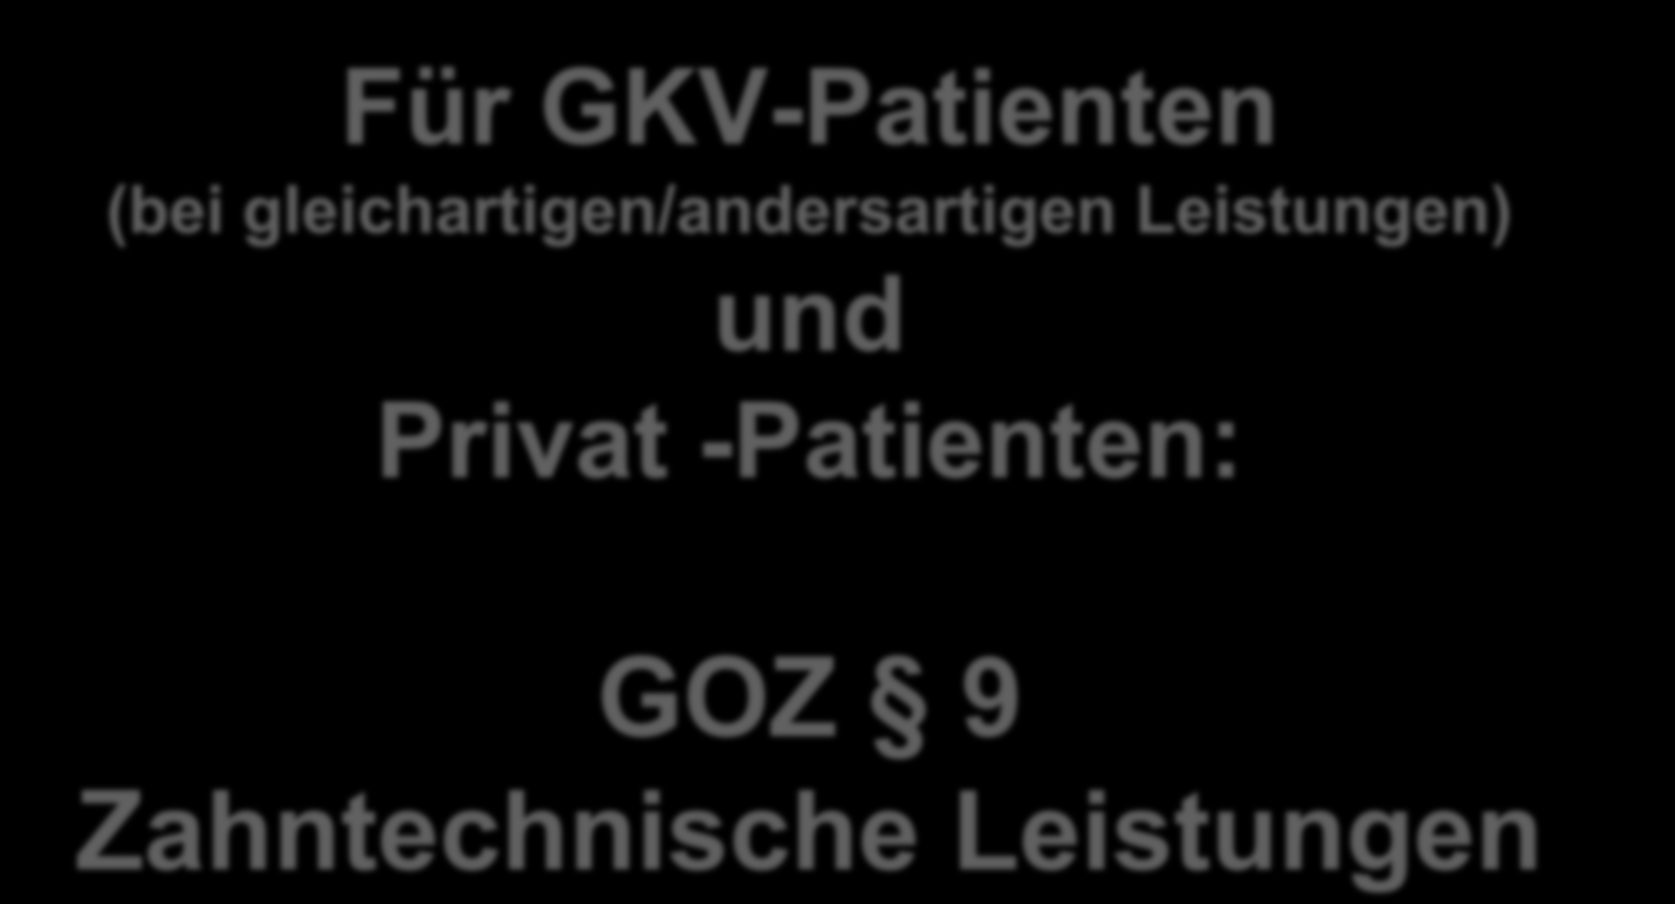 Für GKV-Patienten (bei gleichartigen/andersartigen